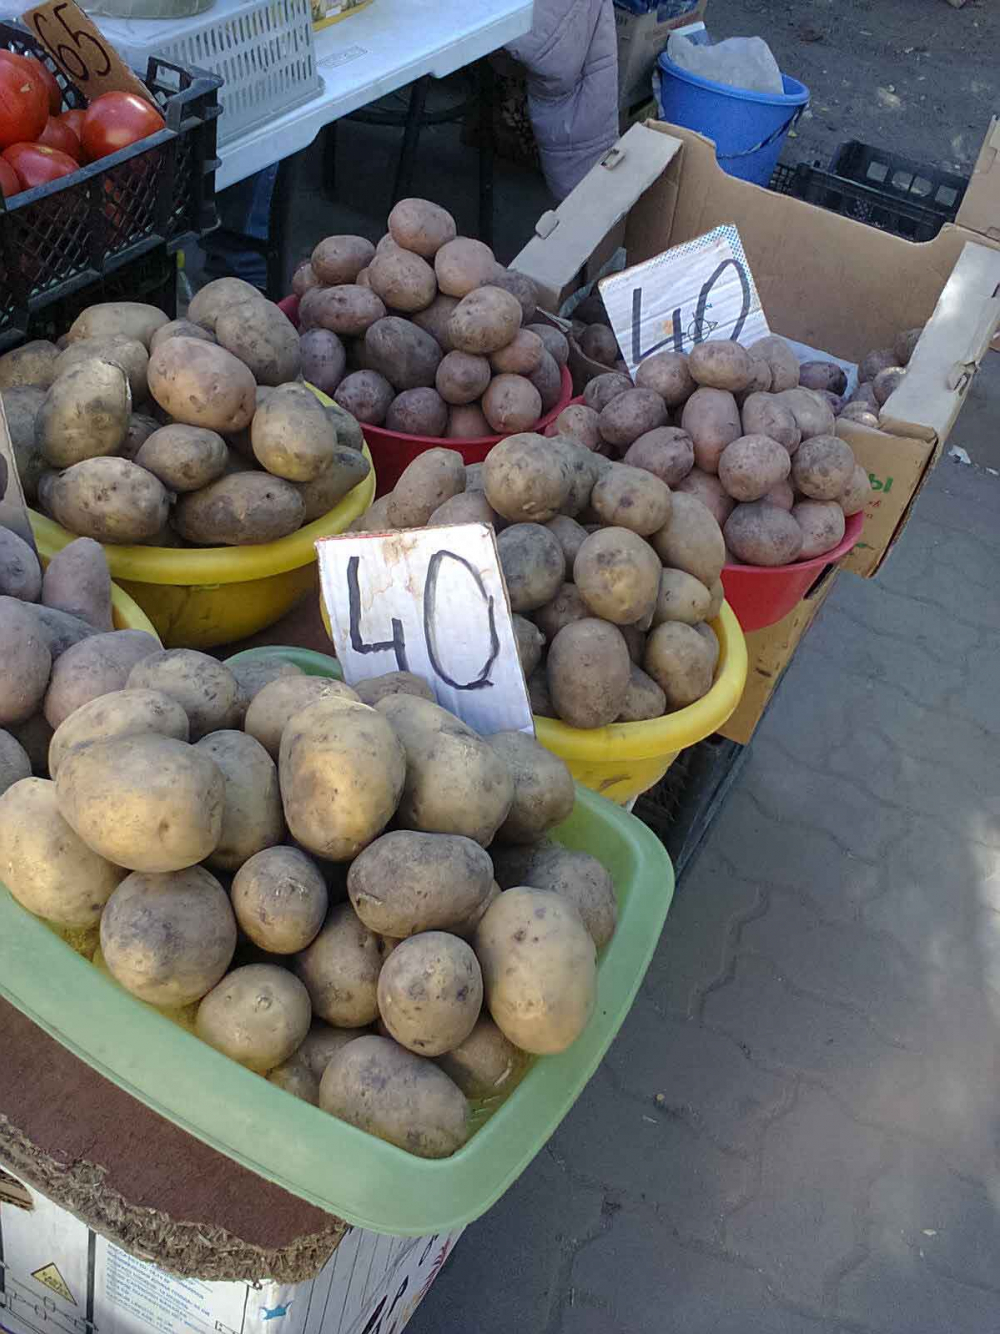 Жителей Волгоградской области стали пугать прогнозами о картошке по 100 рублей за килограмм